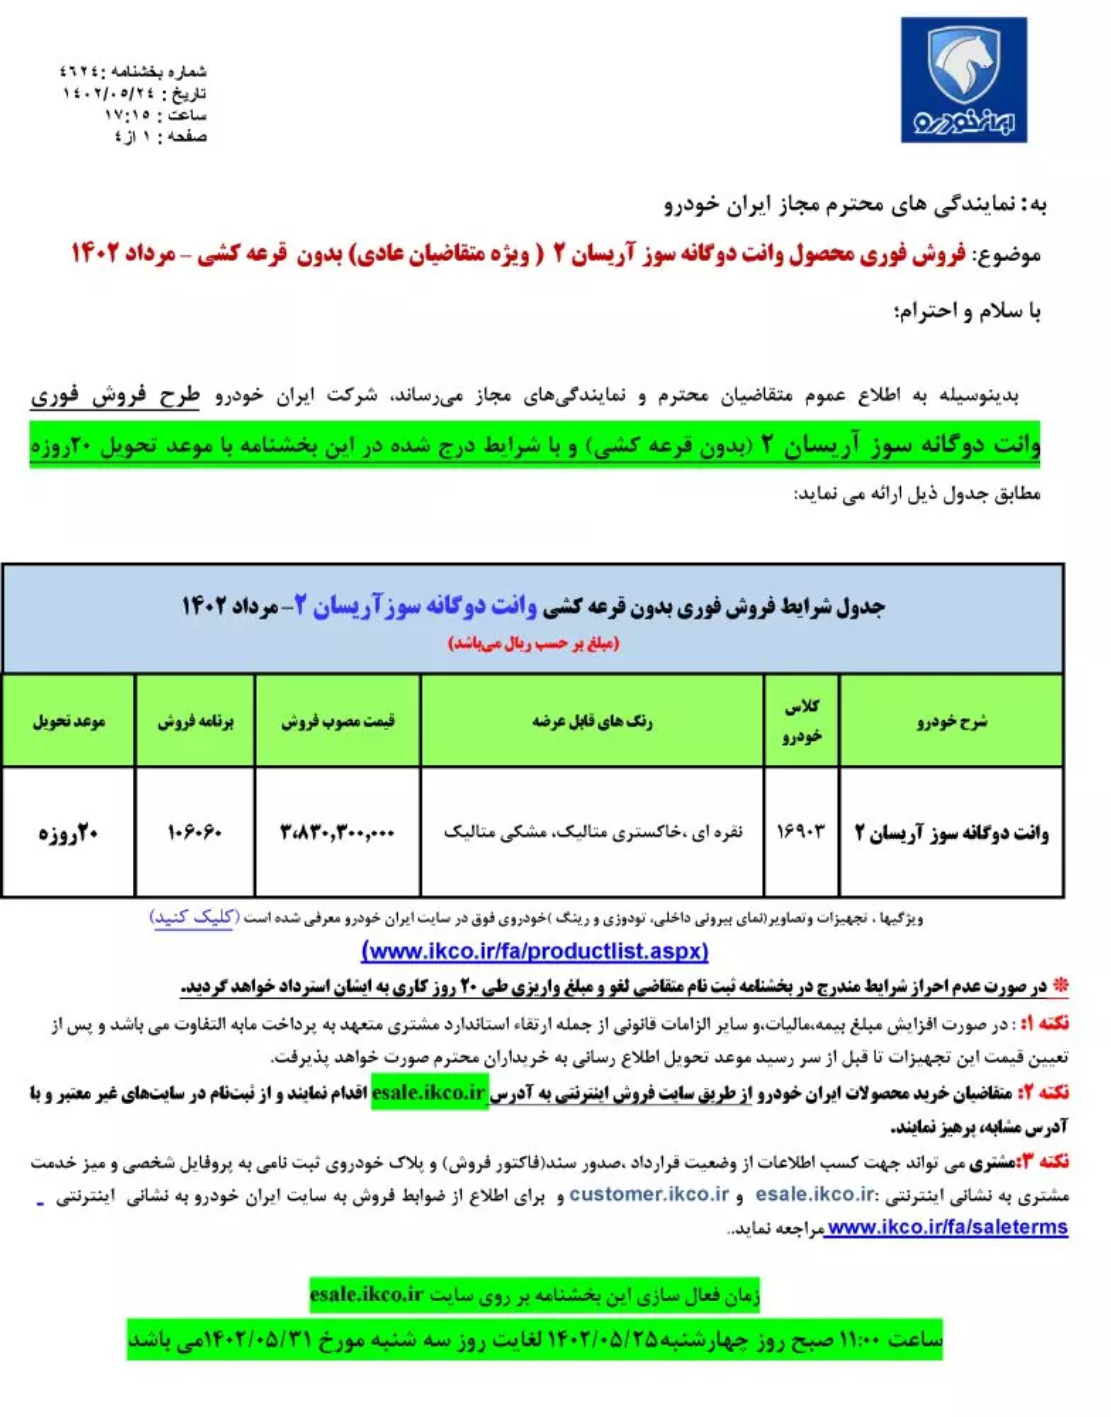 فروش فوق العاده ایران خودرو ویژه مردادماه آغاز شد + لینک ثبت نام و قیمت 2